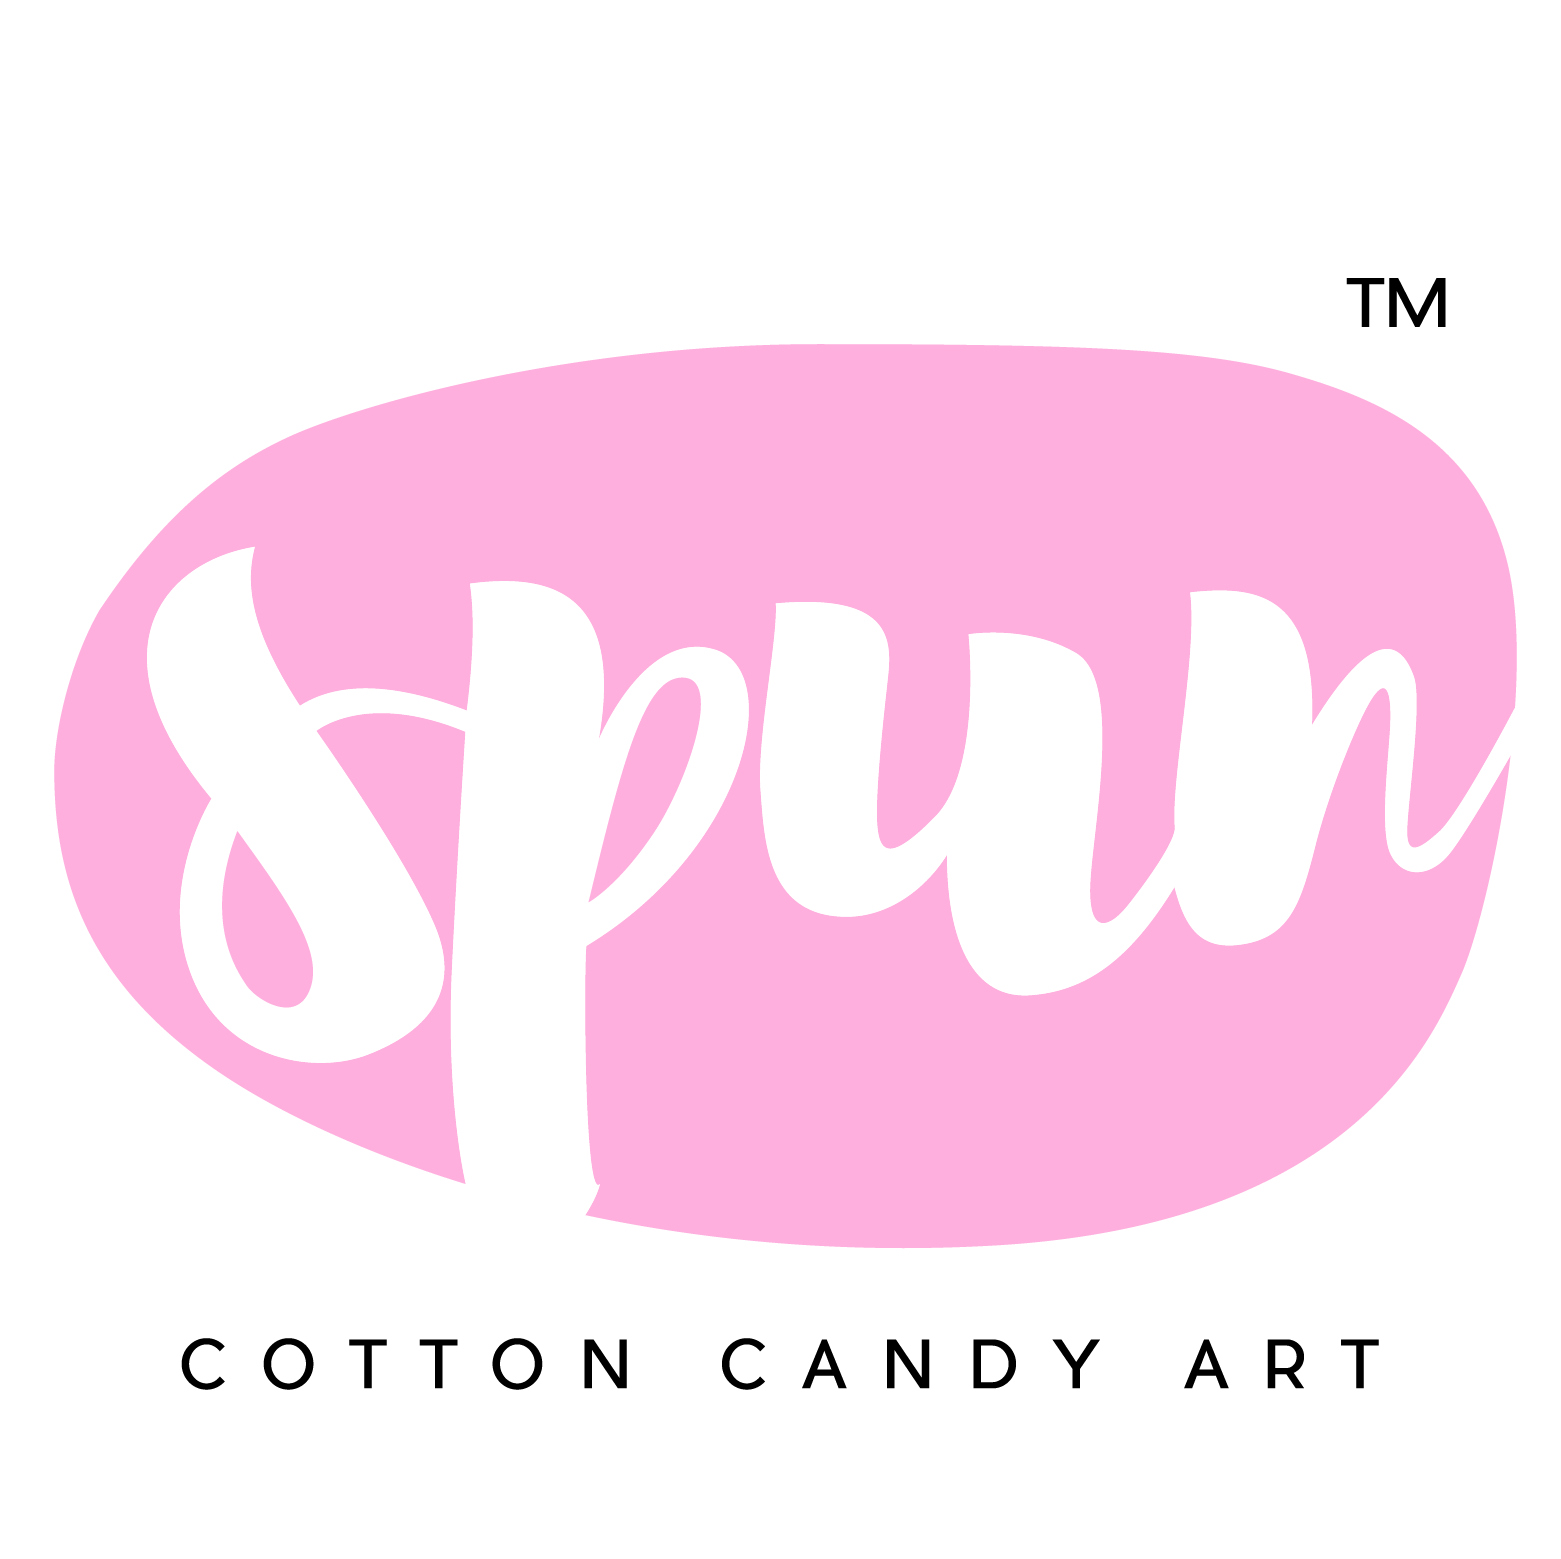 Spun Cotton Candy Art